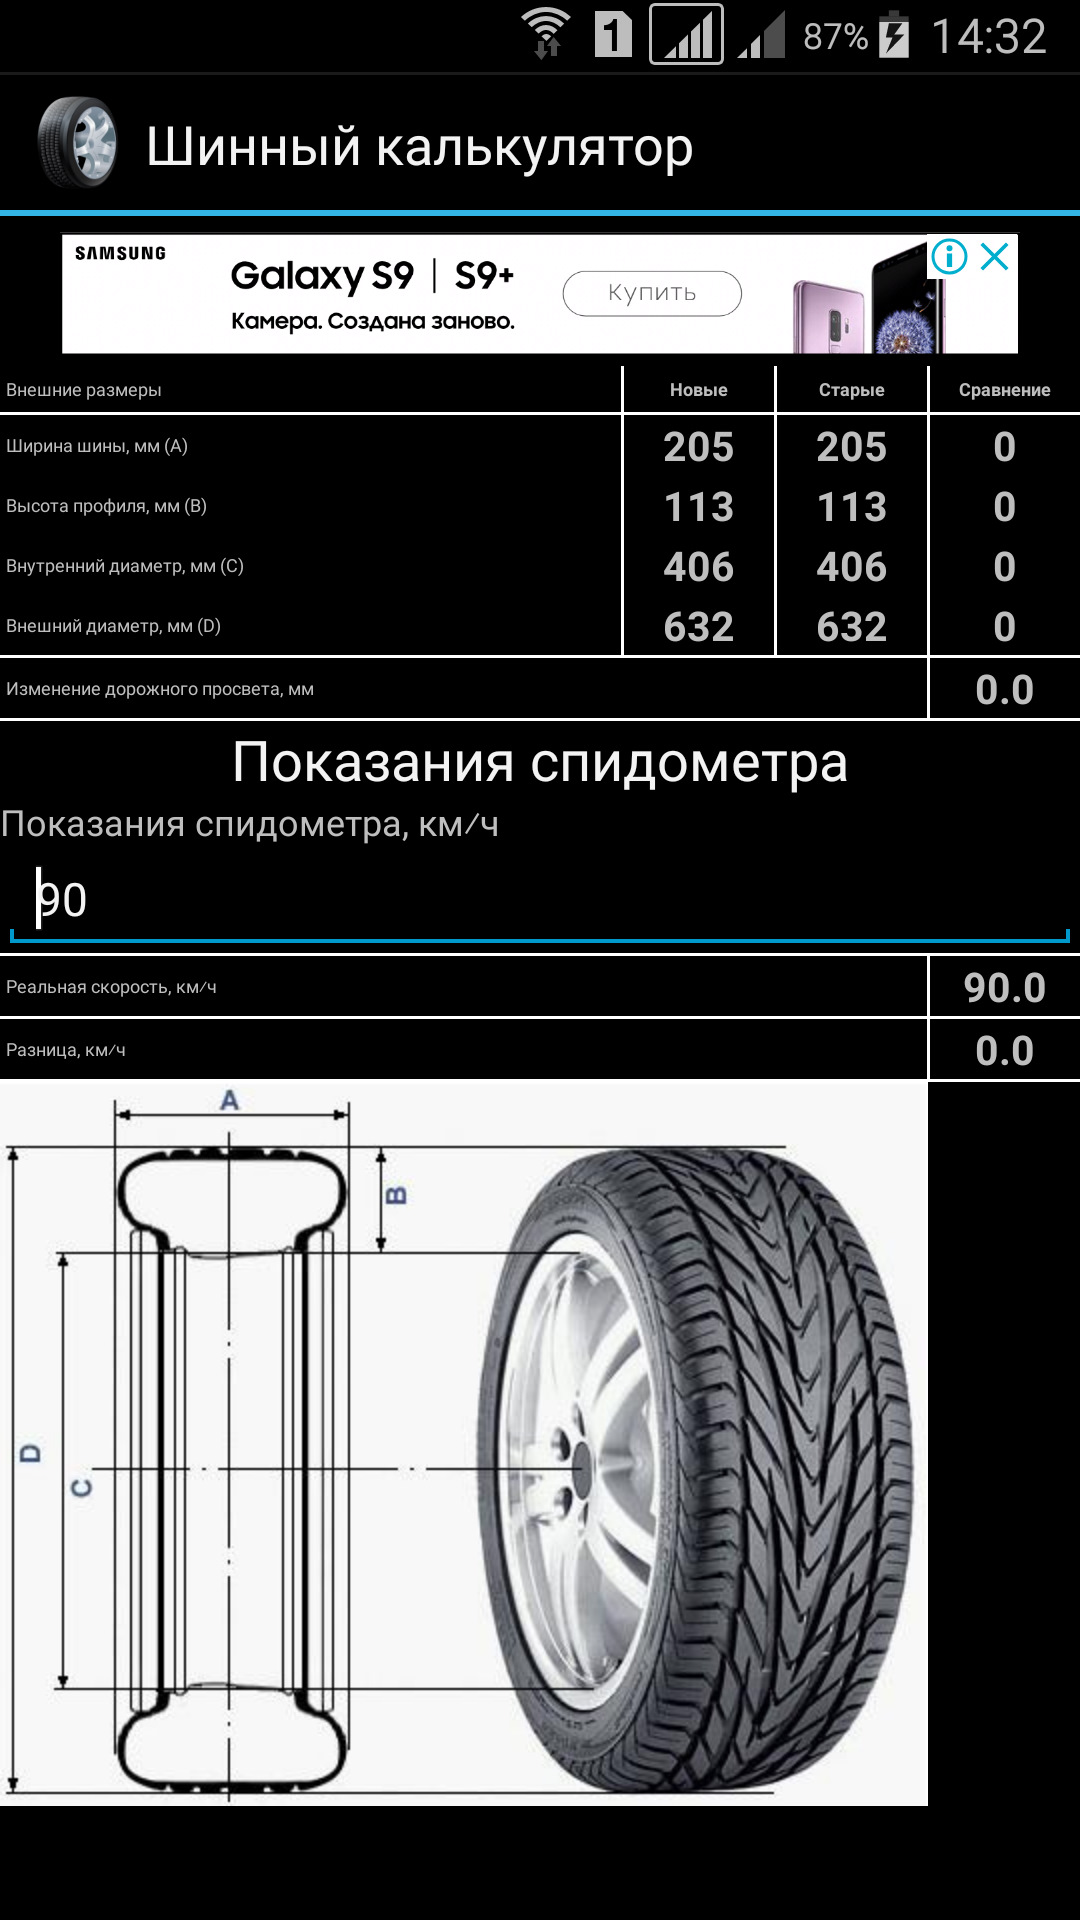 Размеры колес в мм. Шины Lexus LX 570 размер шин. Размер колес Лексус 570. Ширина колеса брп800. Ширина профиля колес р12.